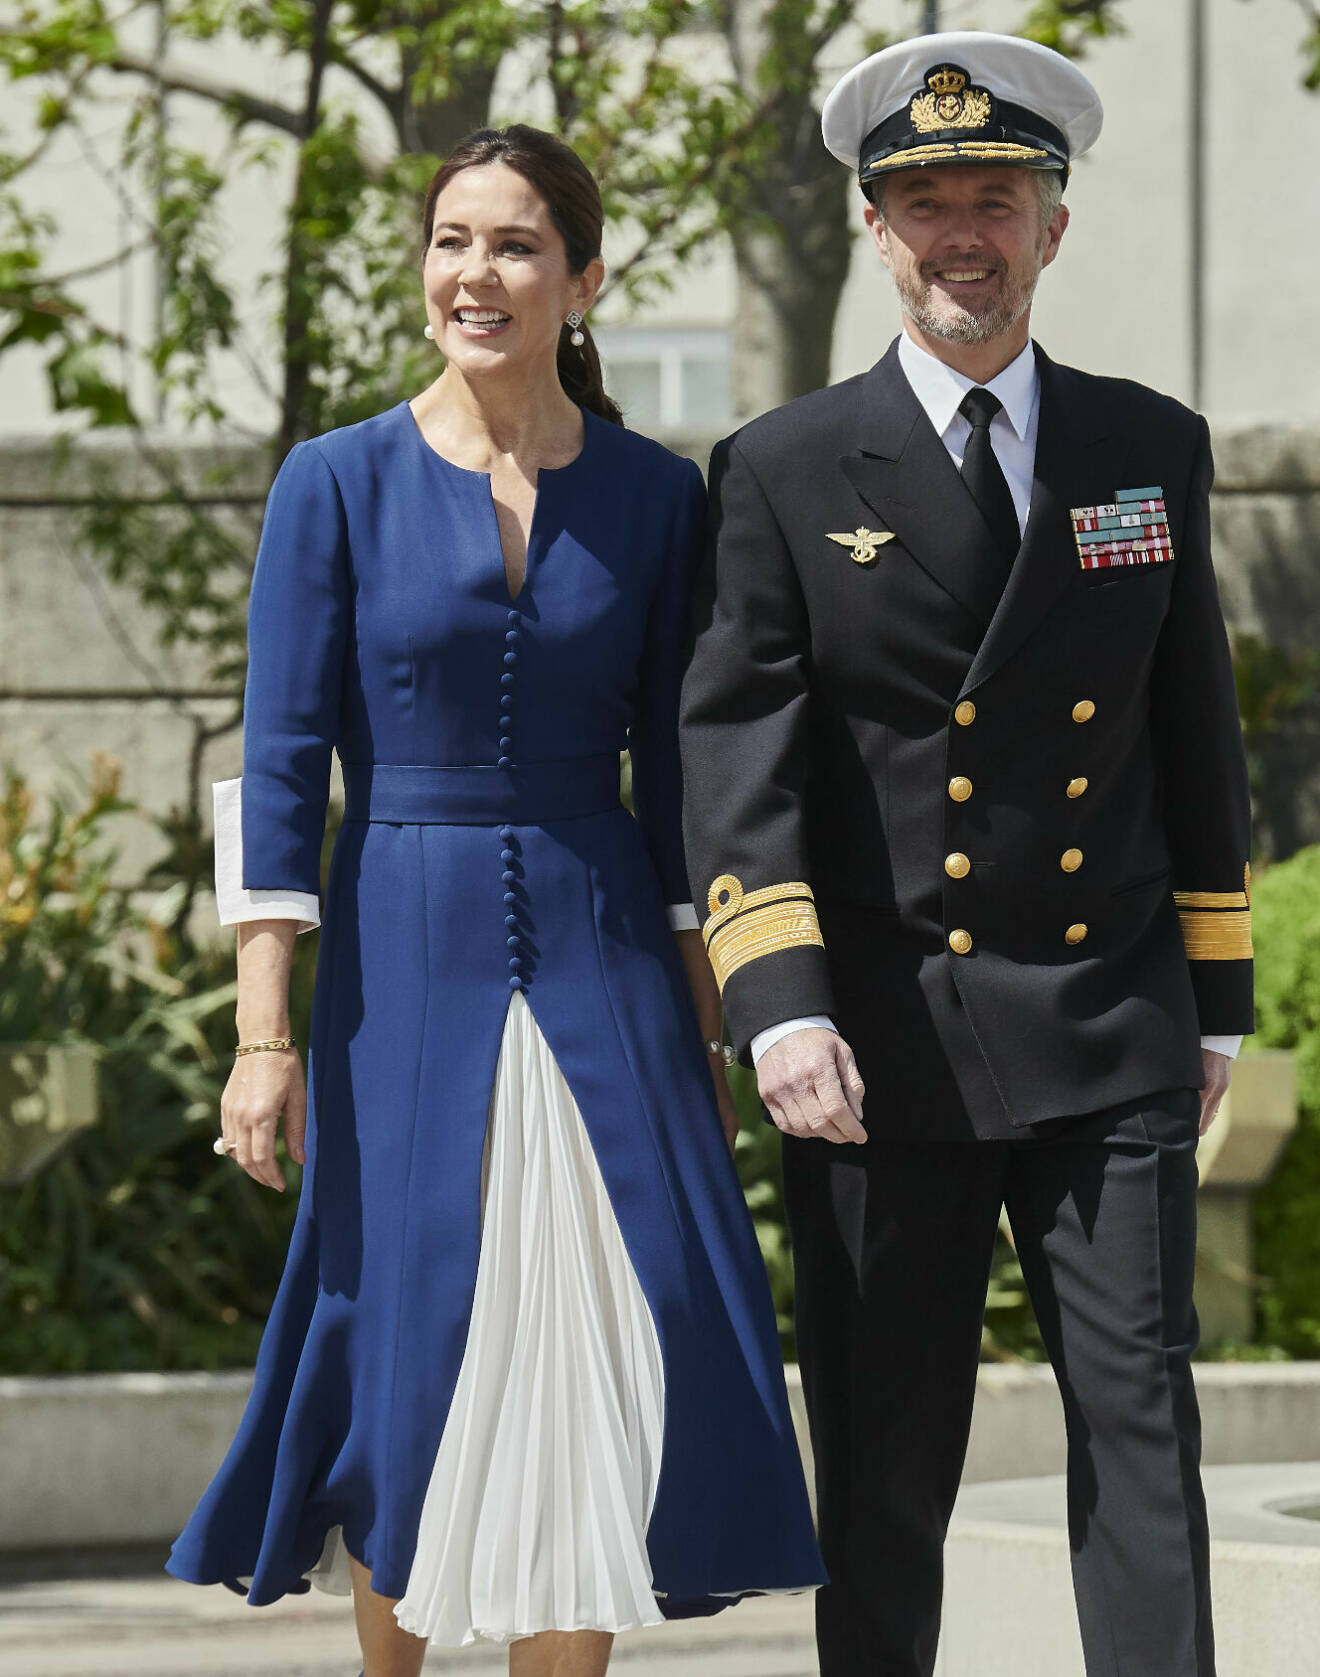 Drottning Mary i blå och vit klänning och kung Frederik i uniform